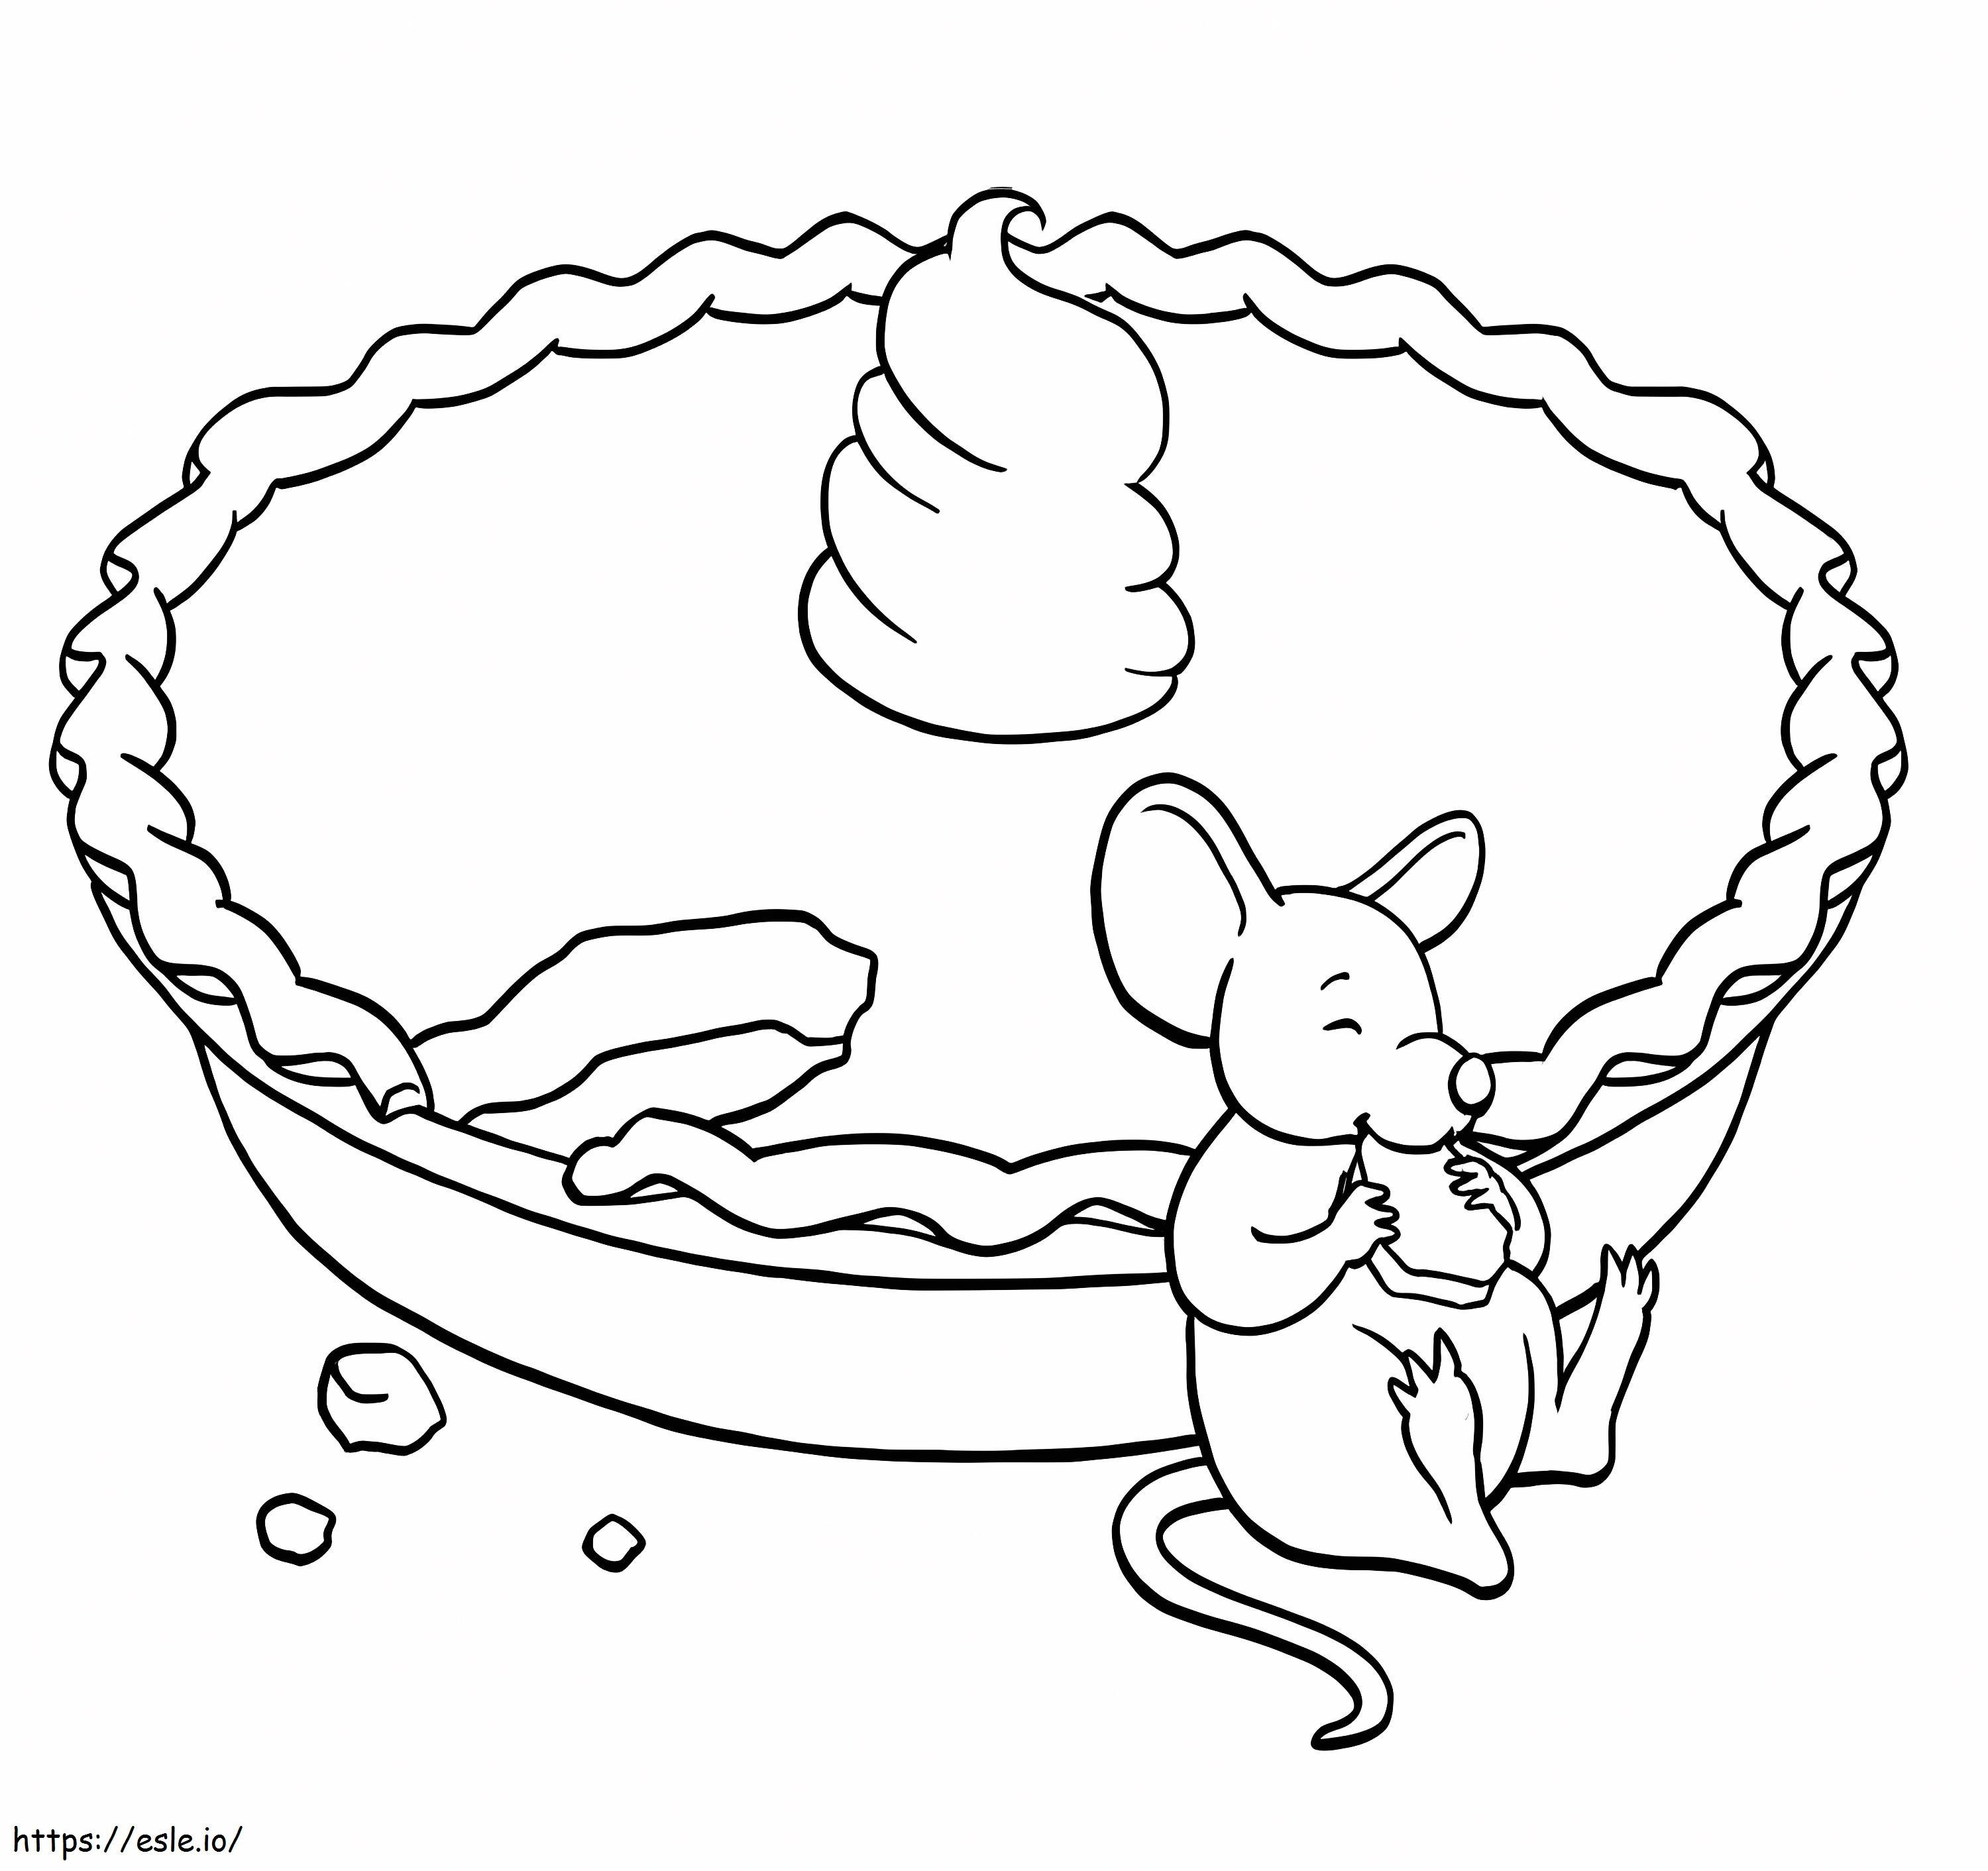 Maus isst Kuchen ausmalbilder